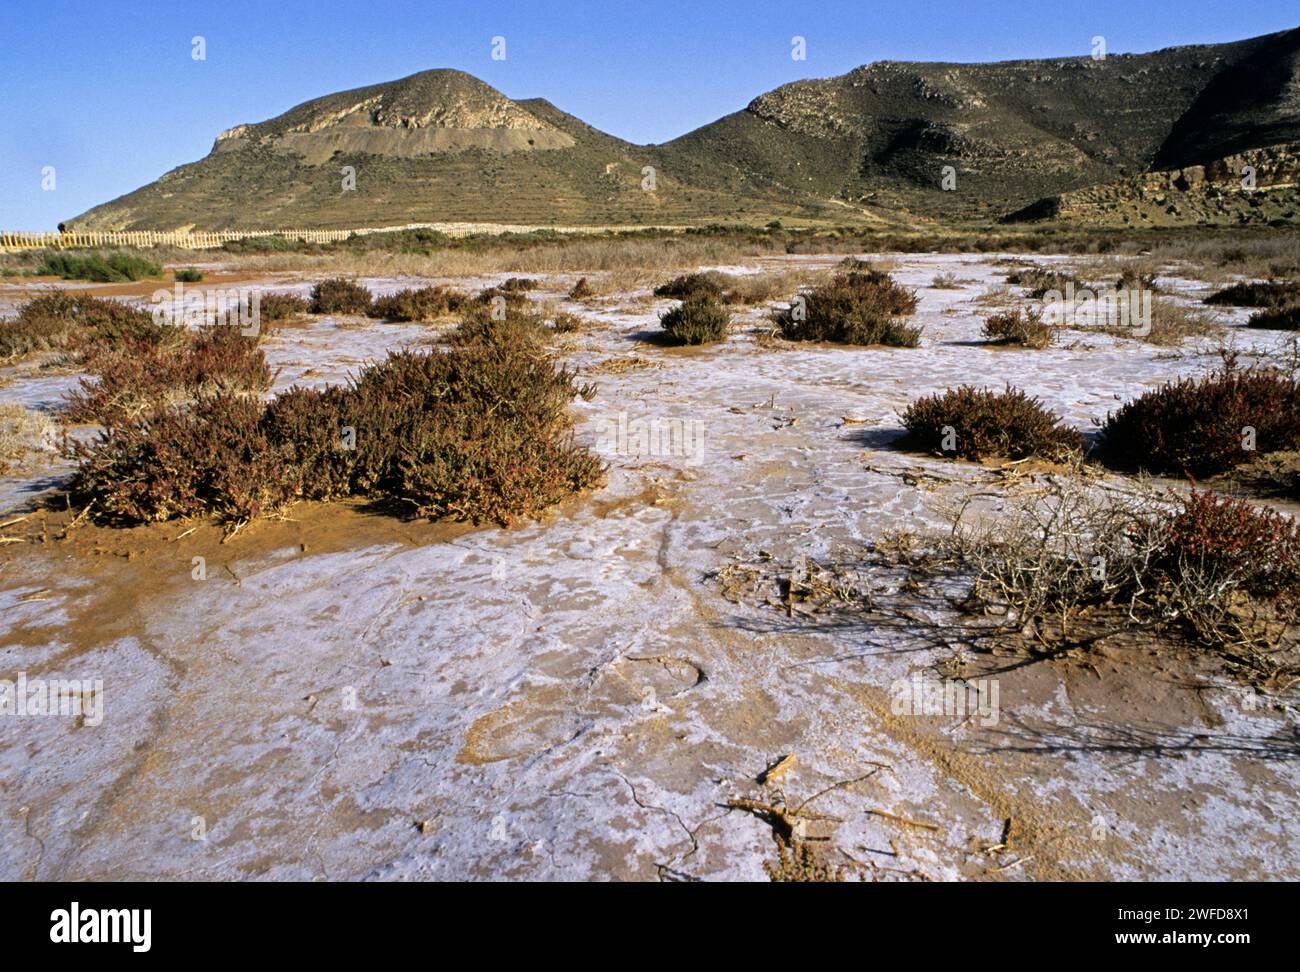 barren landscape - Rodalquilar - Parque Natural del Cabo de Gata, Almería, Andalusia, Spain Stock Photo